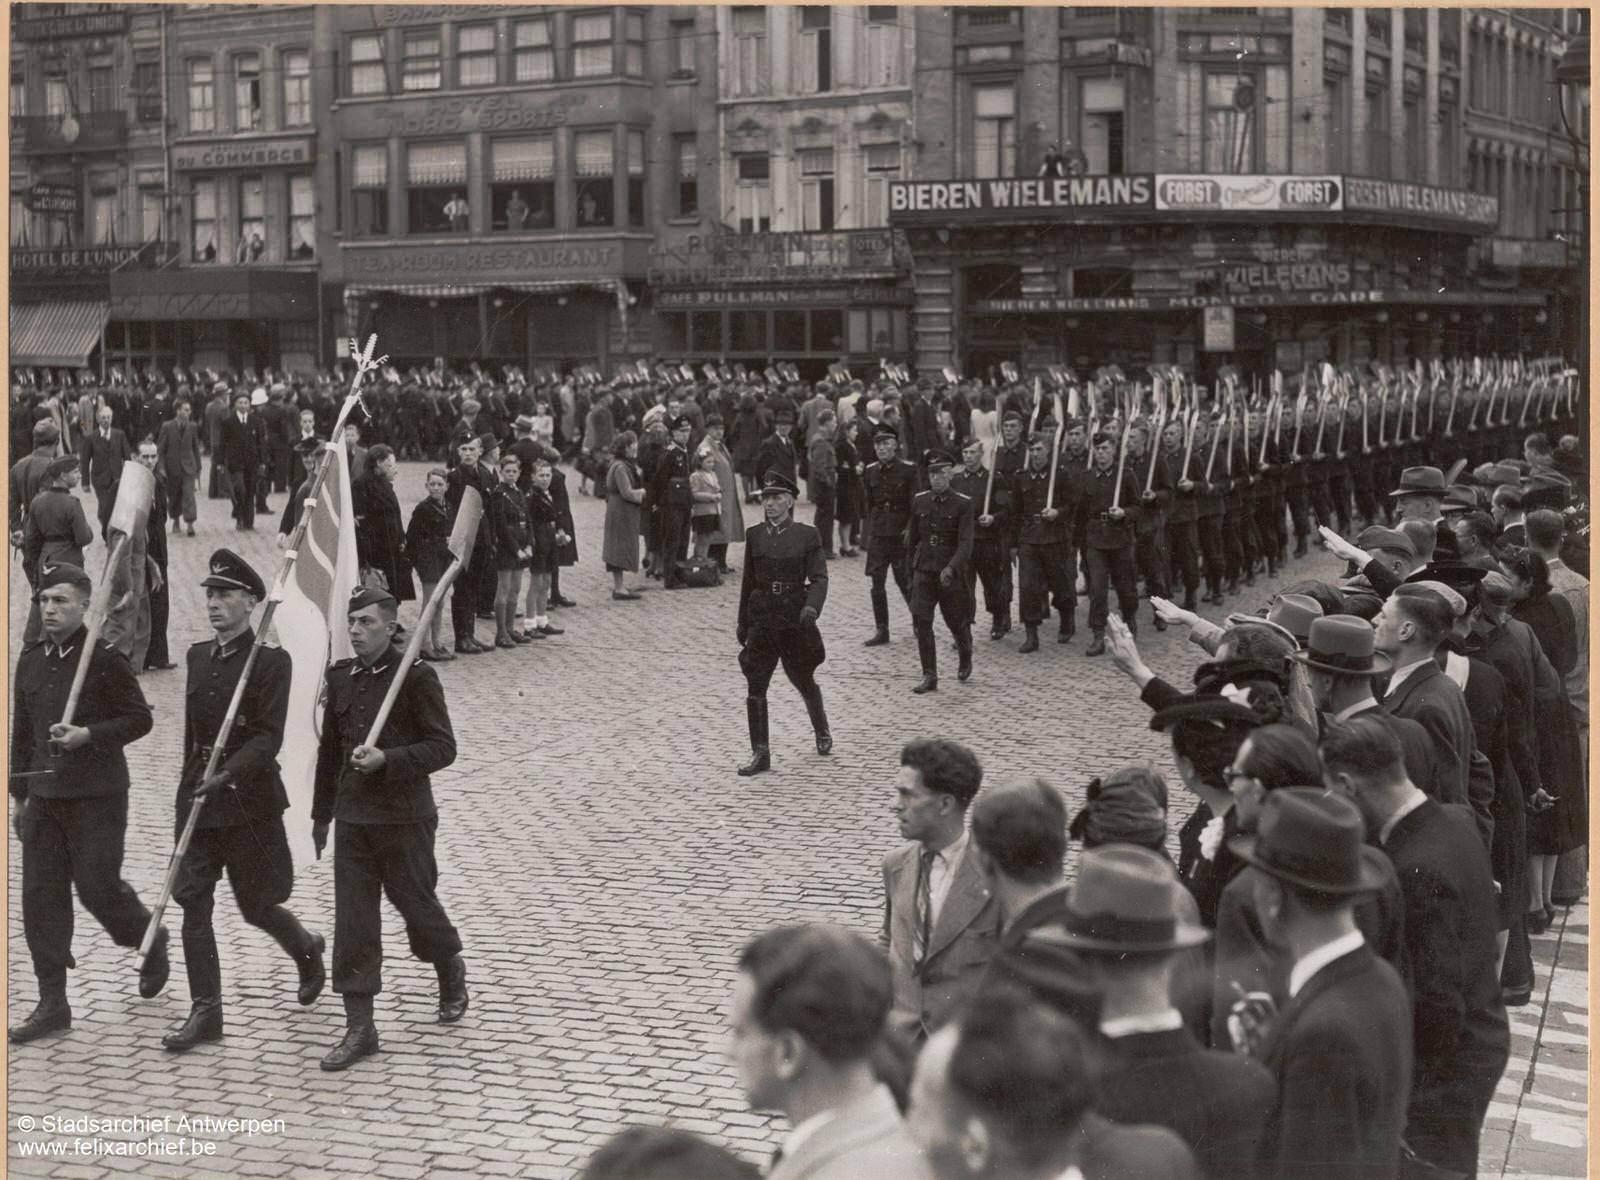 Anvers pendant la Seconde Guerre Mondiale